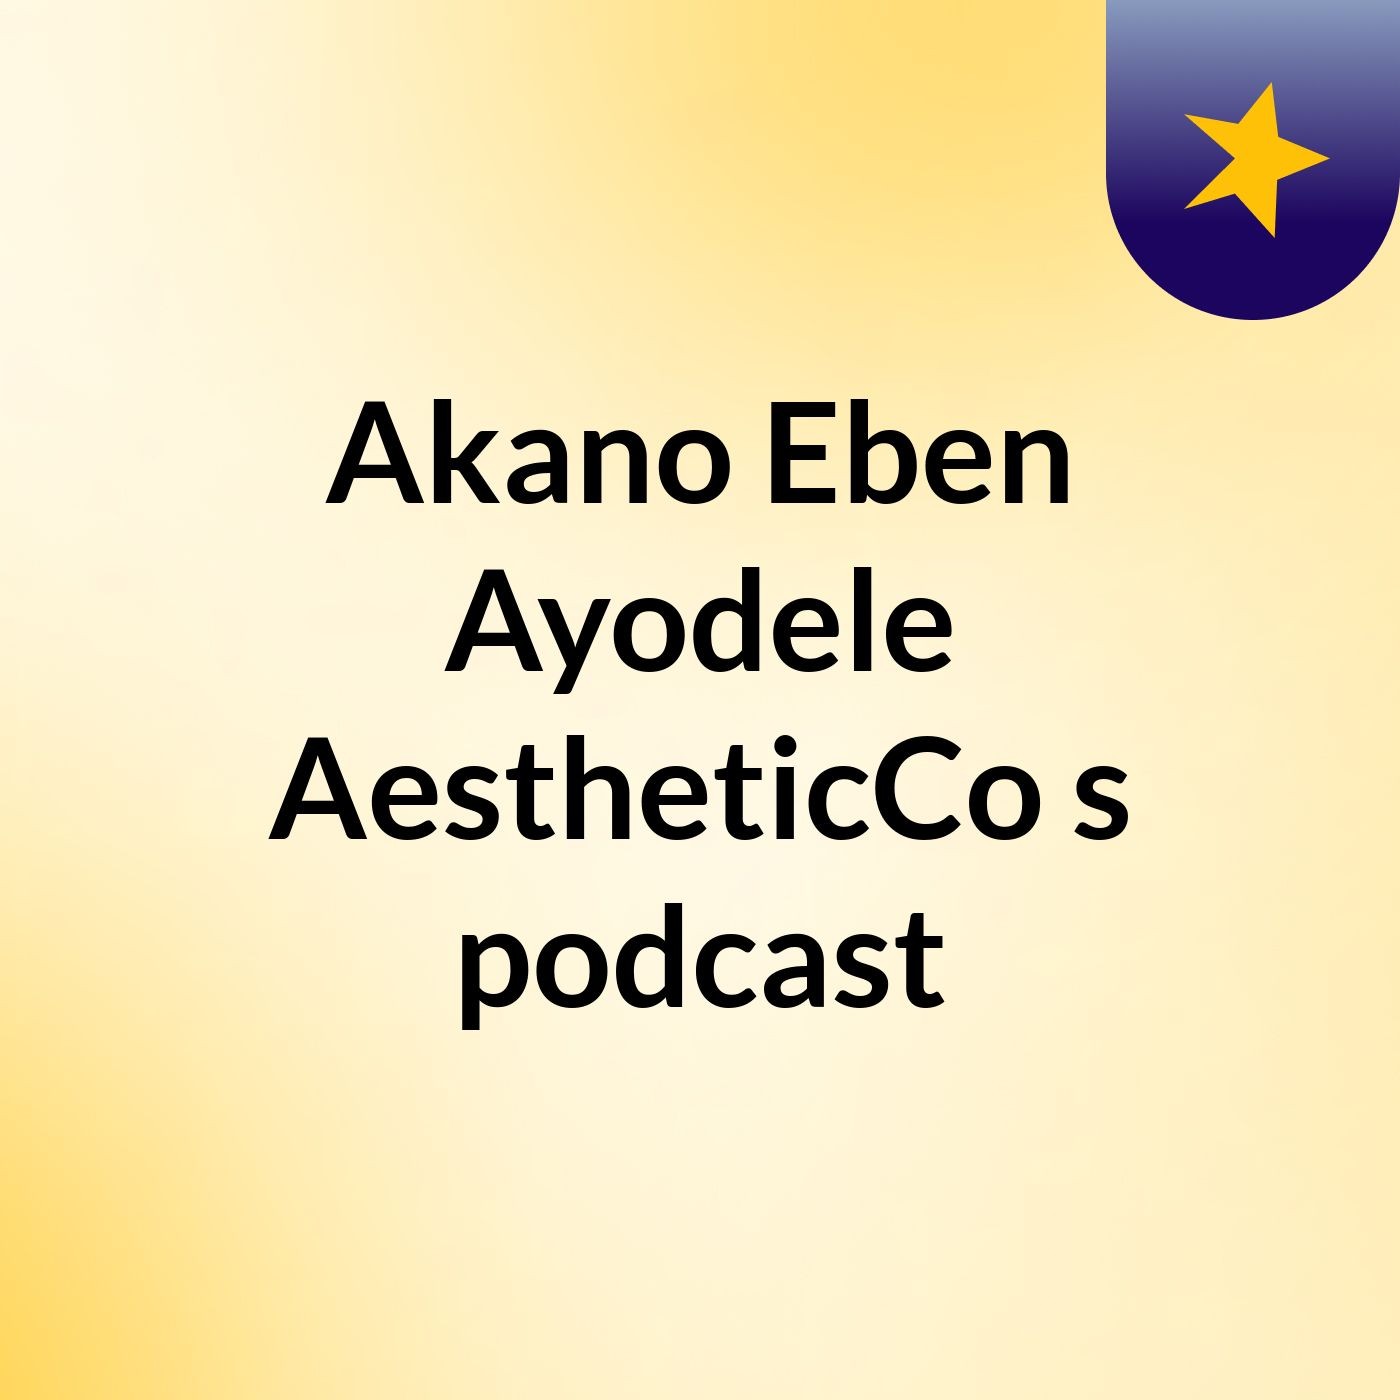 Akano Eben Ayodele AestheticCo's podcast